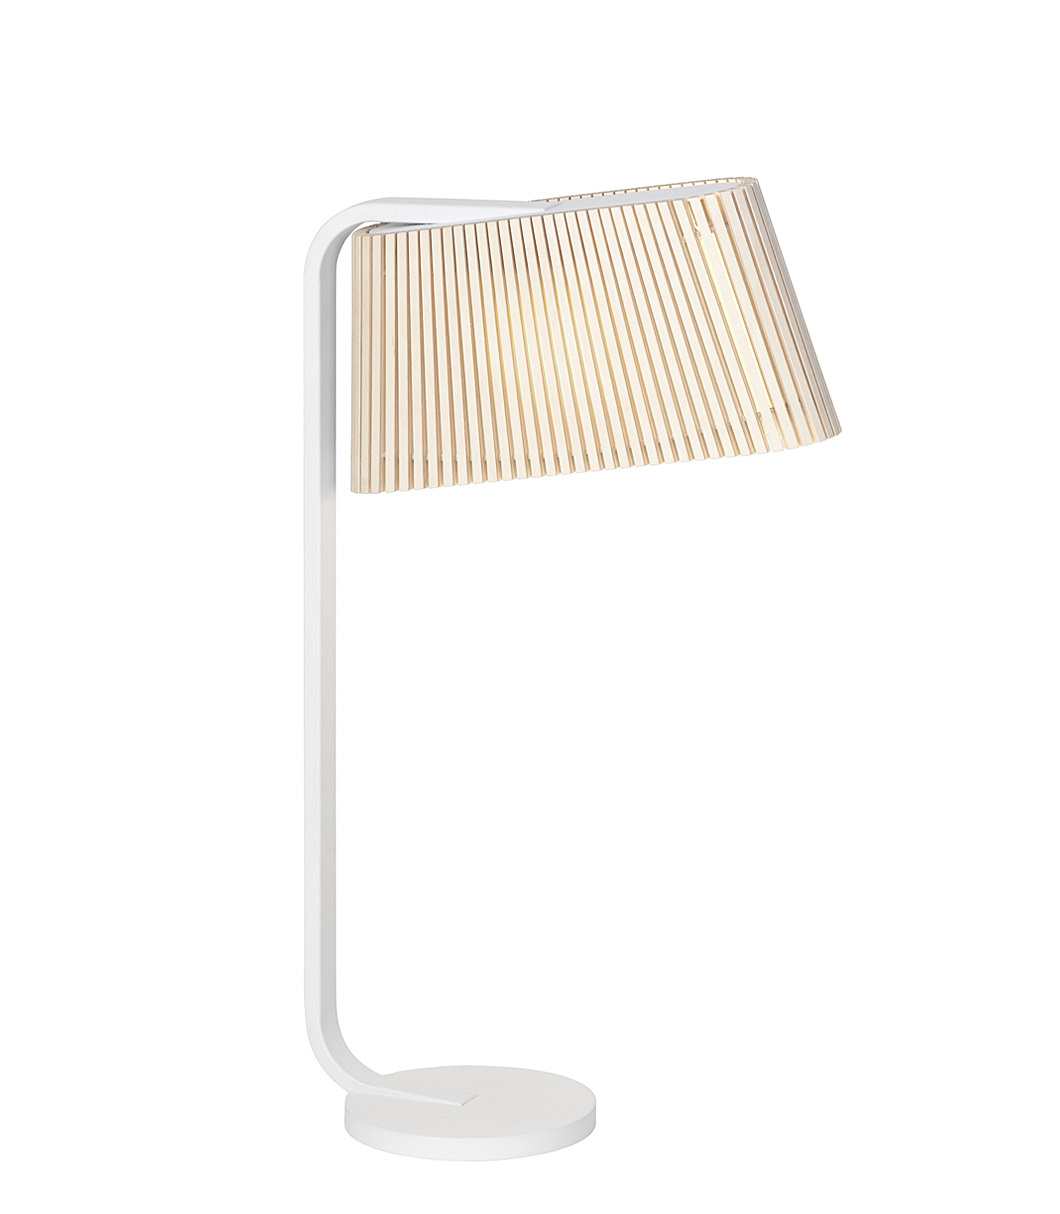 Lampe de table Owalo 7020 est disponible en bouleau naturel